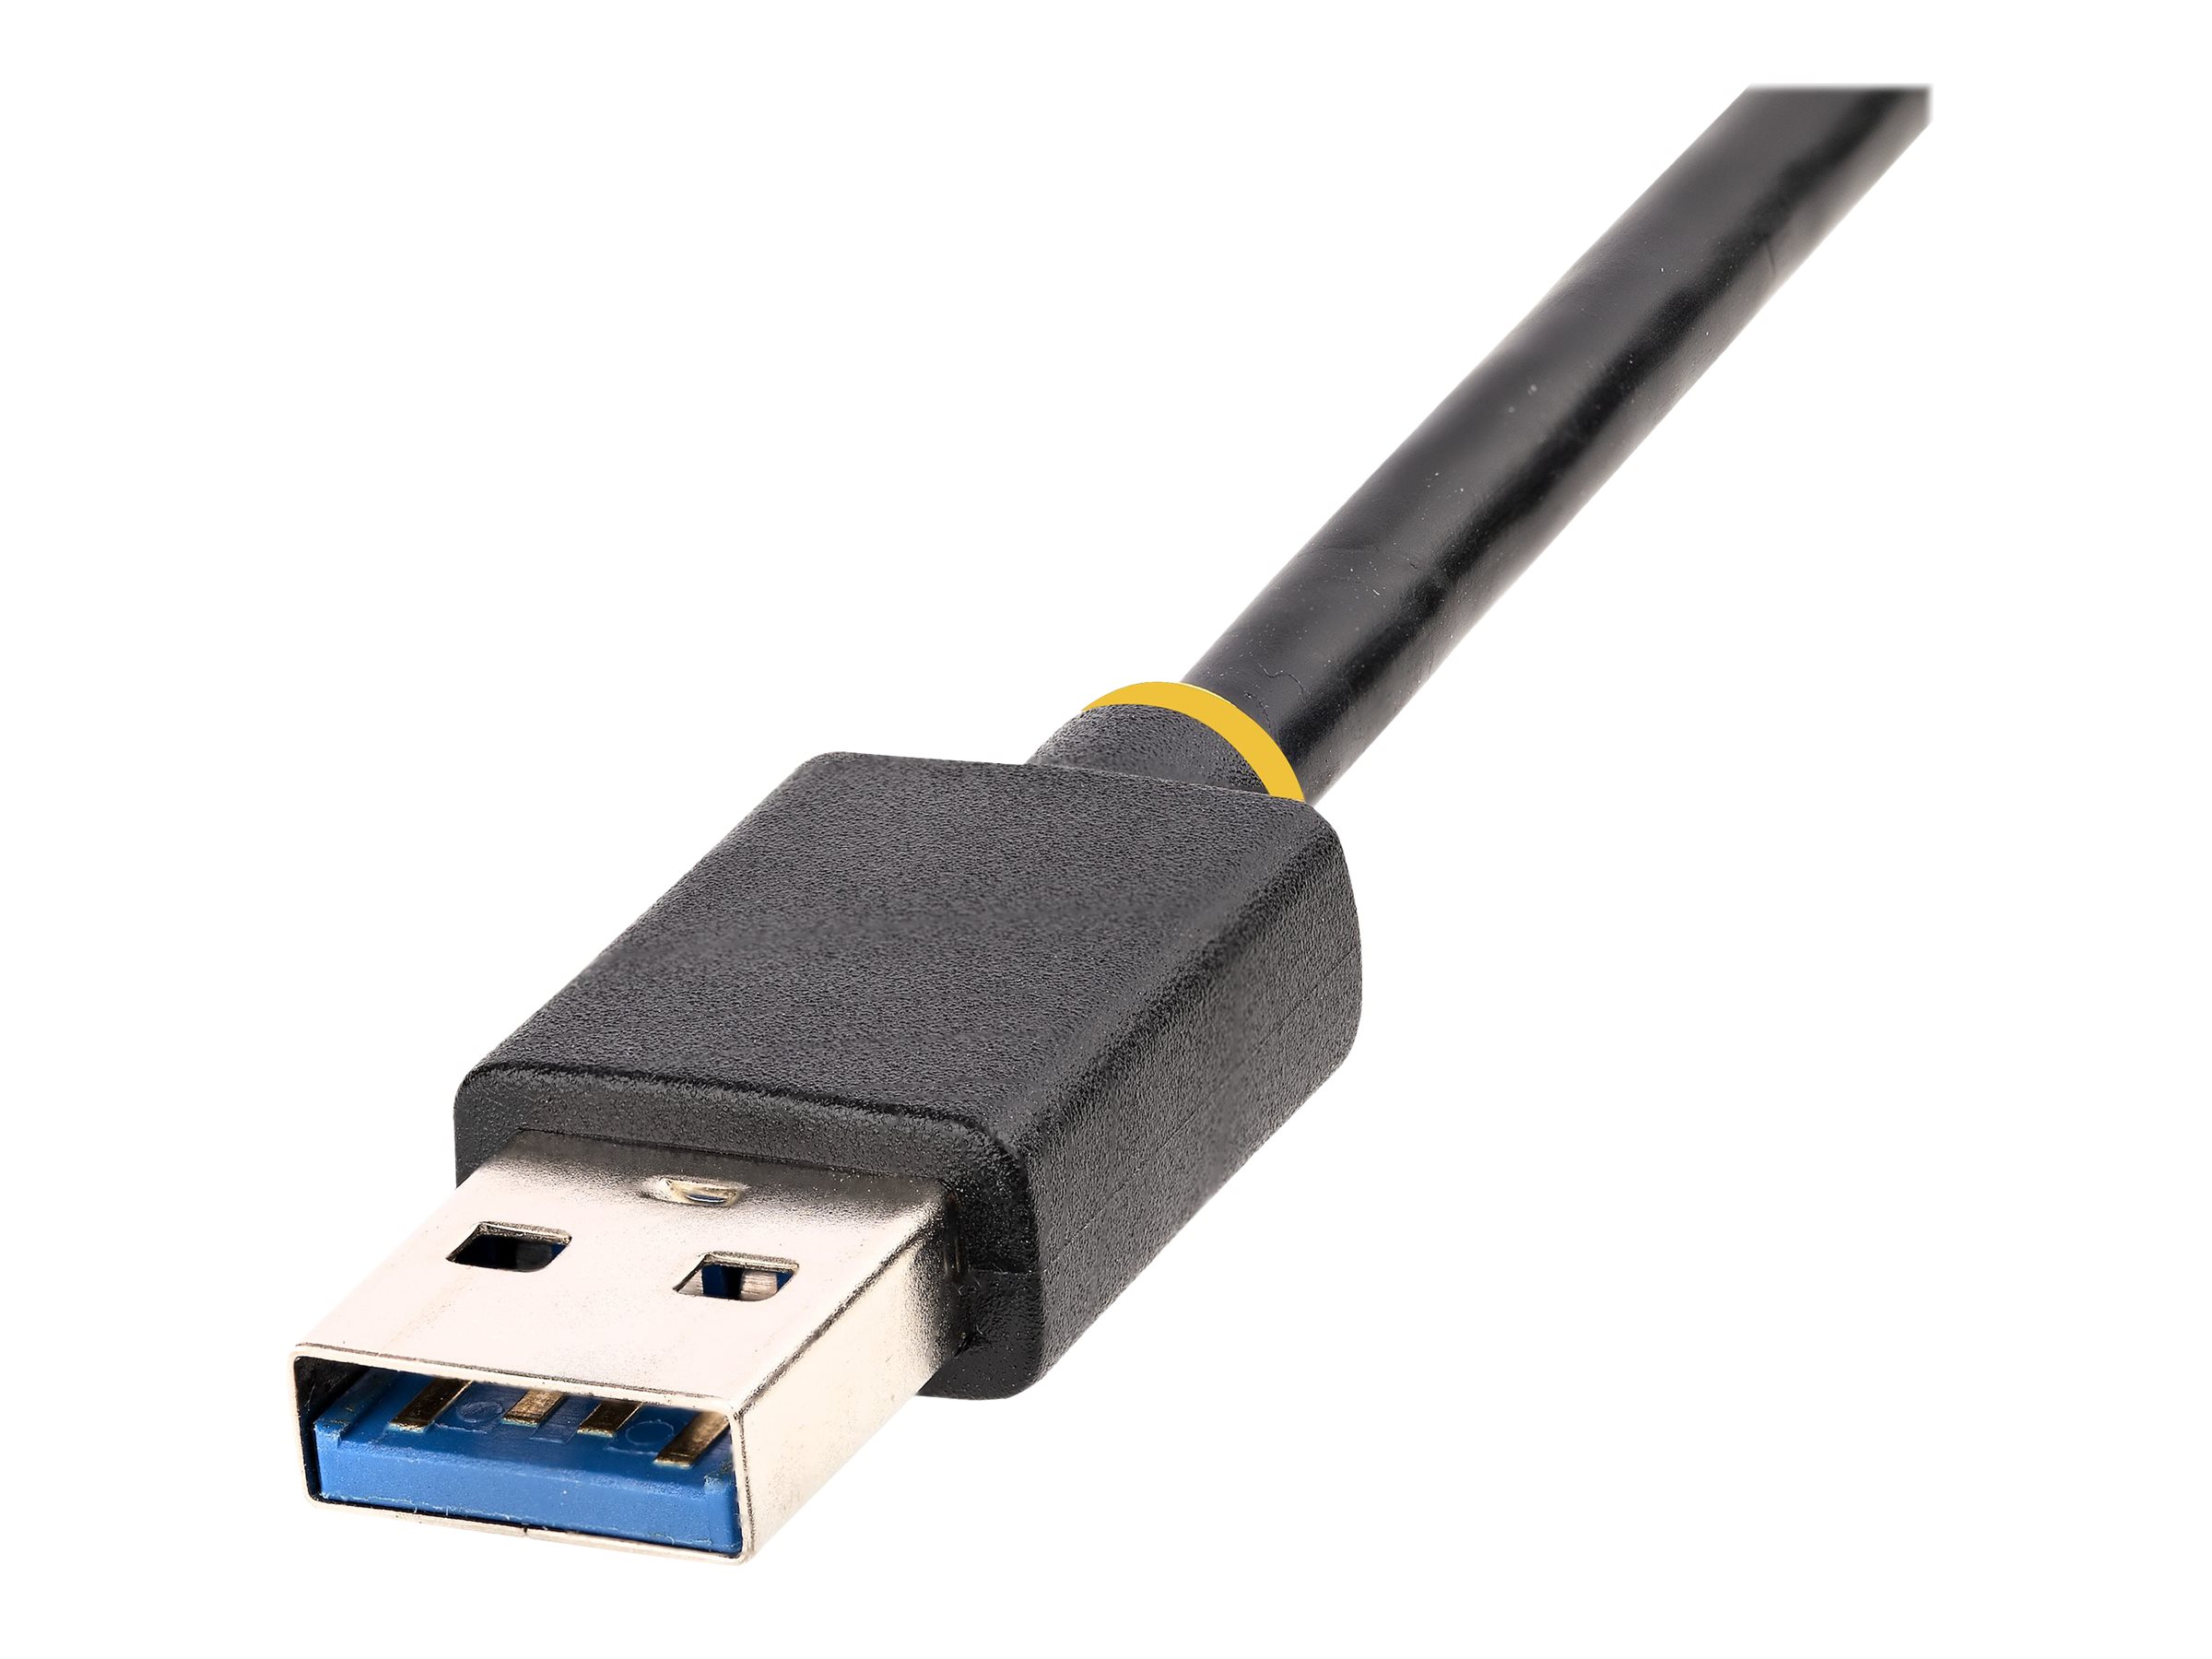 StarTech.com Adaptateur Ethernet USB 3.0 vers 10/100/1000 Gigabit Ethernet  - Câble RJ45 vers USB - Cordon USB RJ45 de 30cm - Convertisseur RJ45 USB  (USB31000S2) - Adaptateur réseau - USB 3.2 Gen